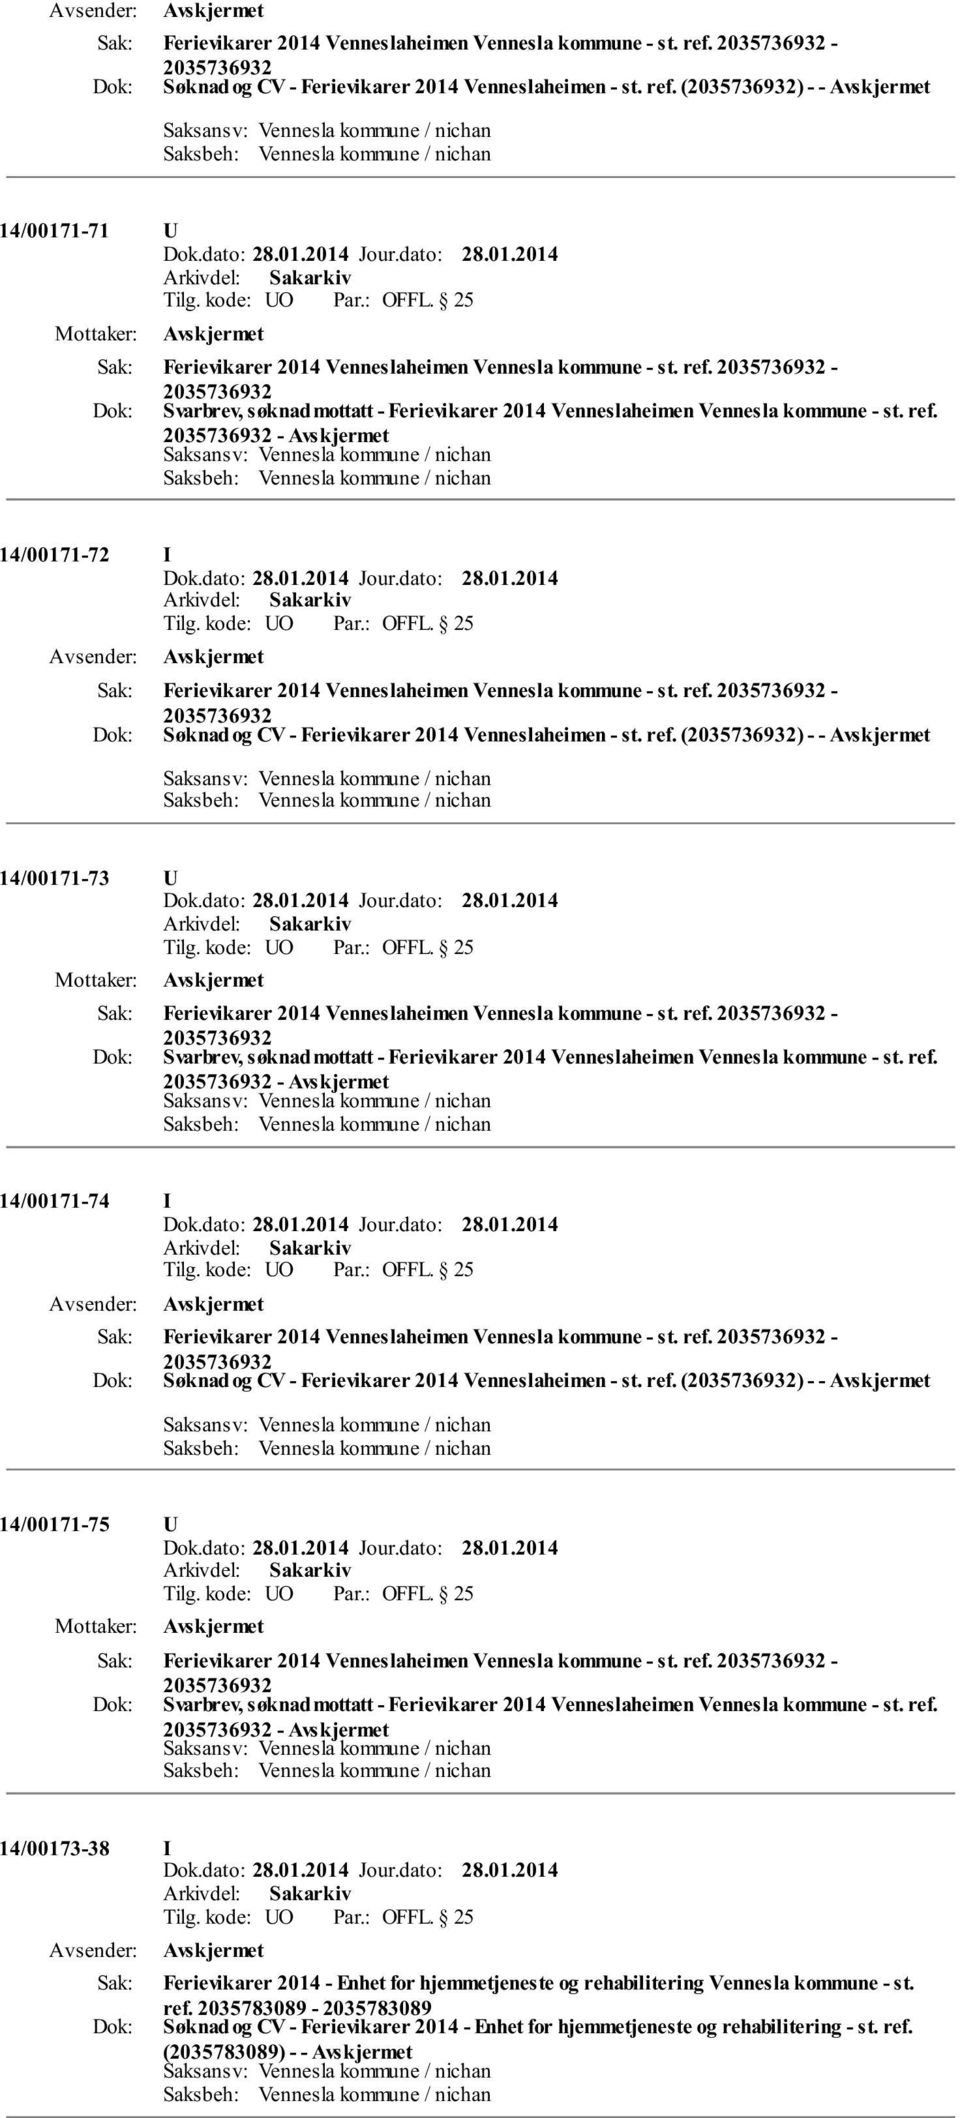 ref. (2035736932) - - 14/00171-73 U Ferievikarer 2014 Venneslaheimen Vennesla kommune - st. ref.